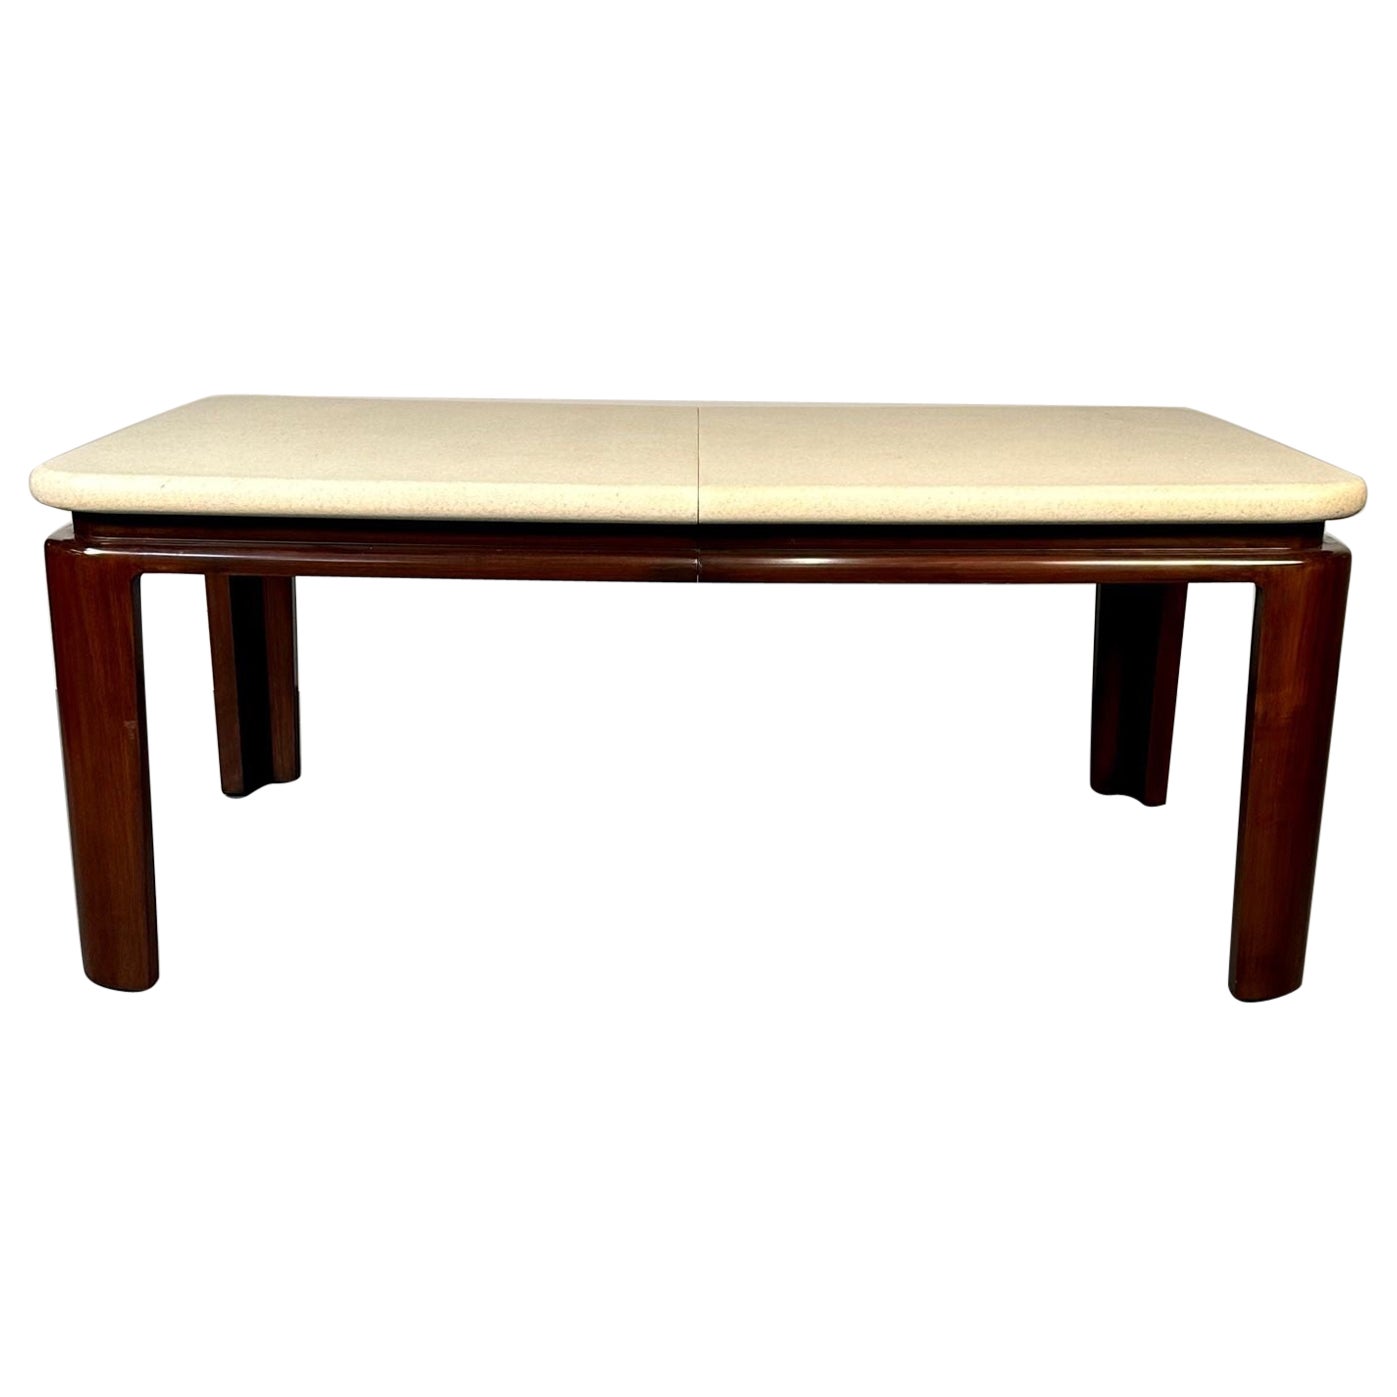 Paul Frankl, Johnson Furniture, table de salle à manger moderne du milieu du siècle dernier, liège, acajou